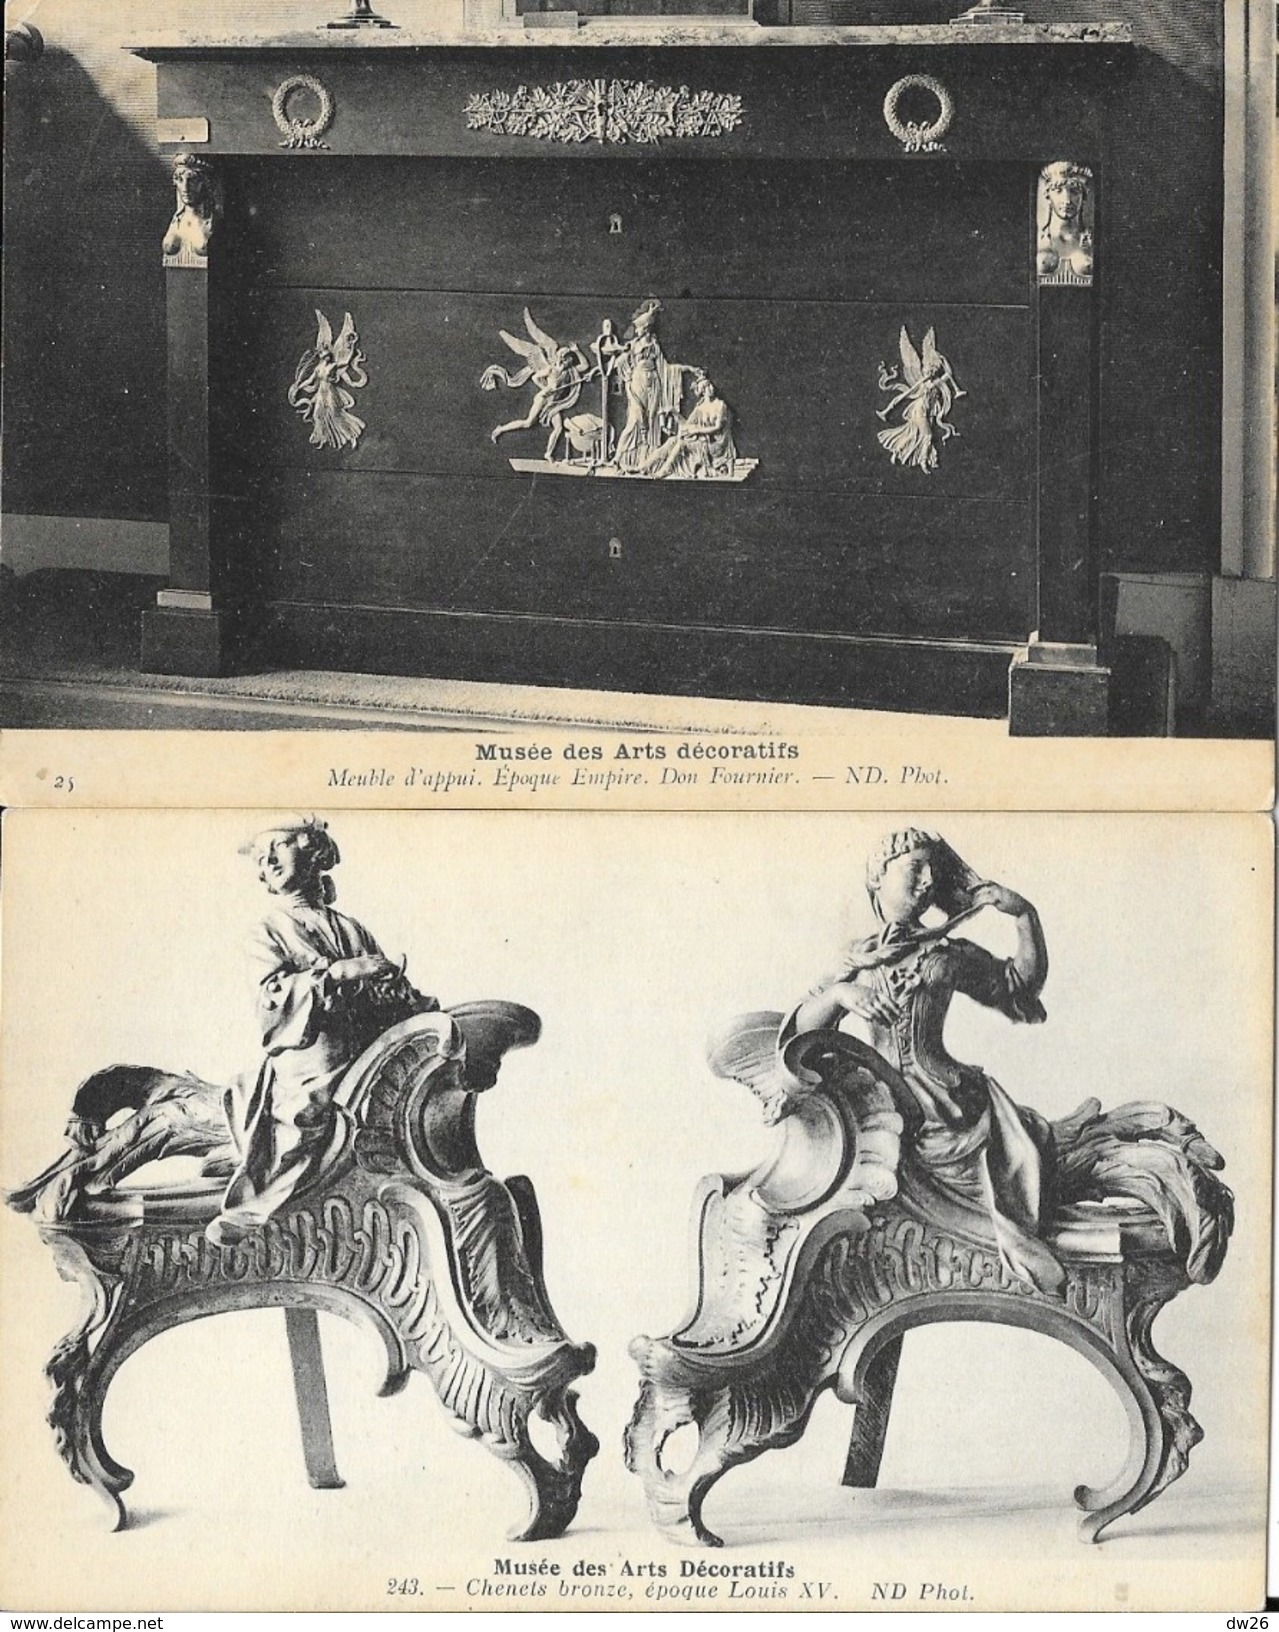 Lot n° 65 de 16 cartes ND - collection du Musée des Arts décoratifs: meubles, mobilier, objets d'art, sculptures...